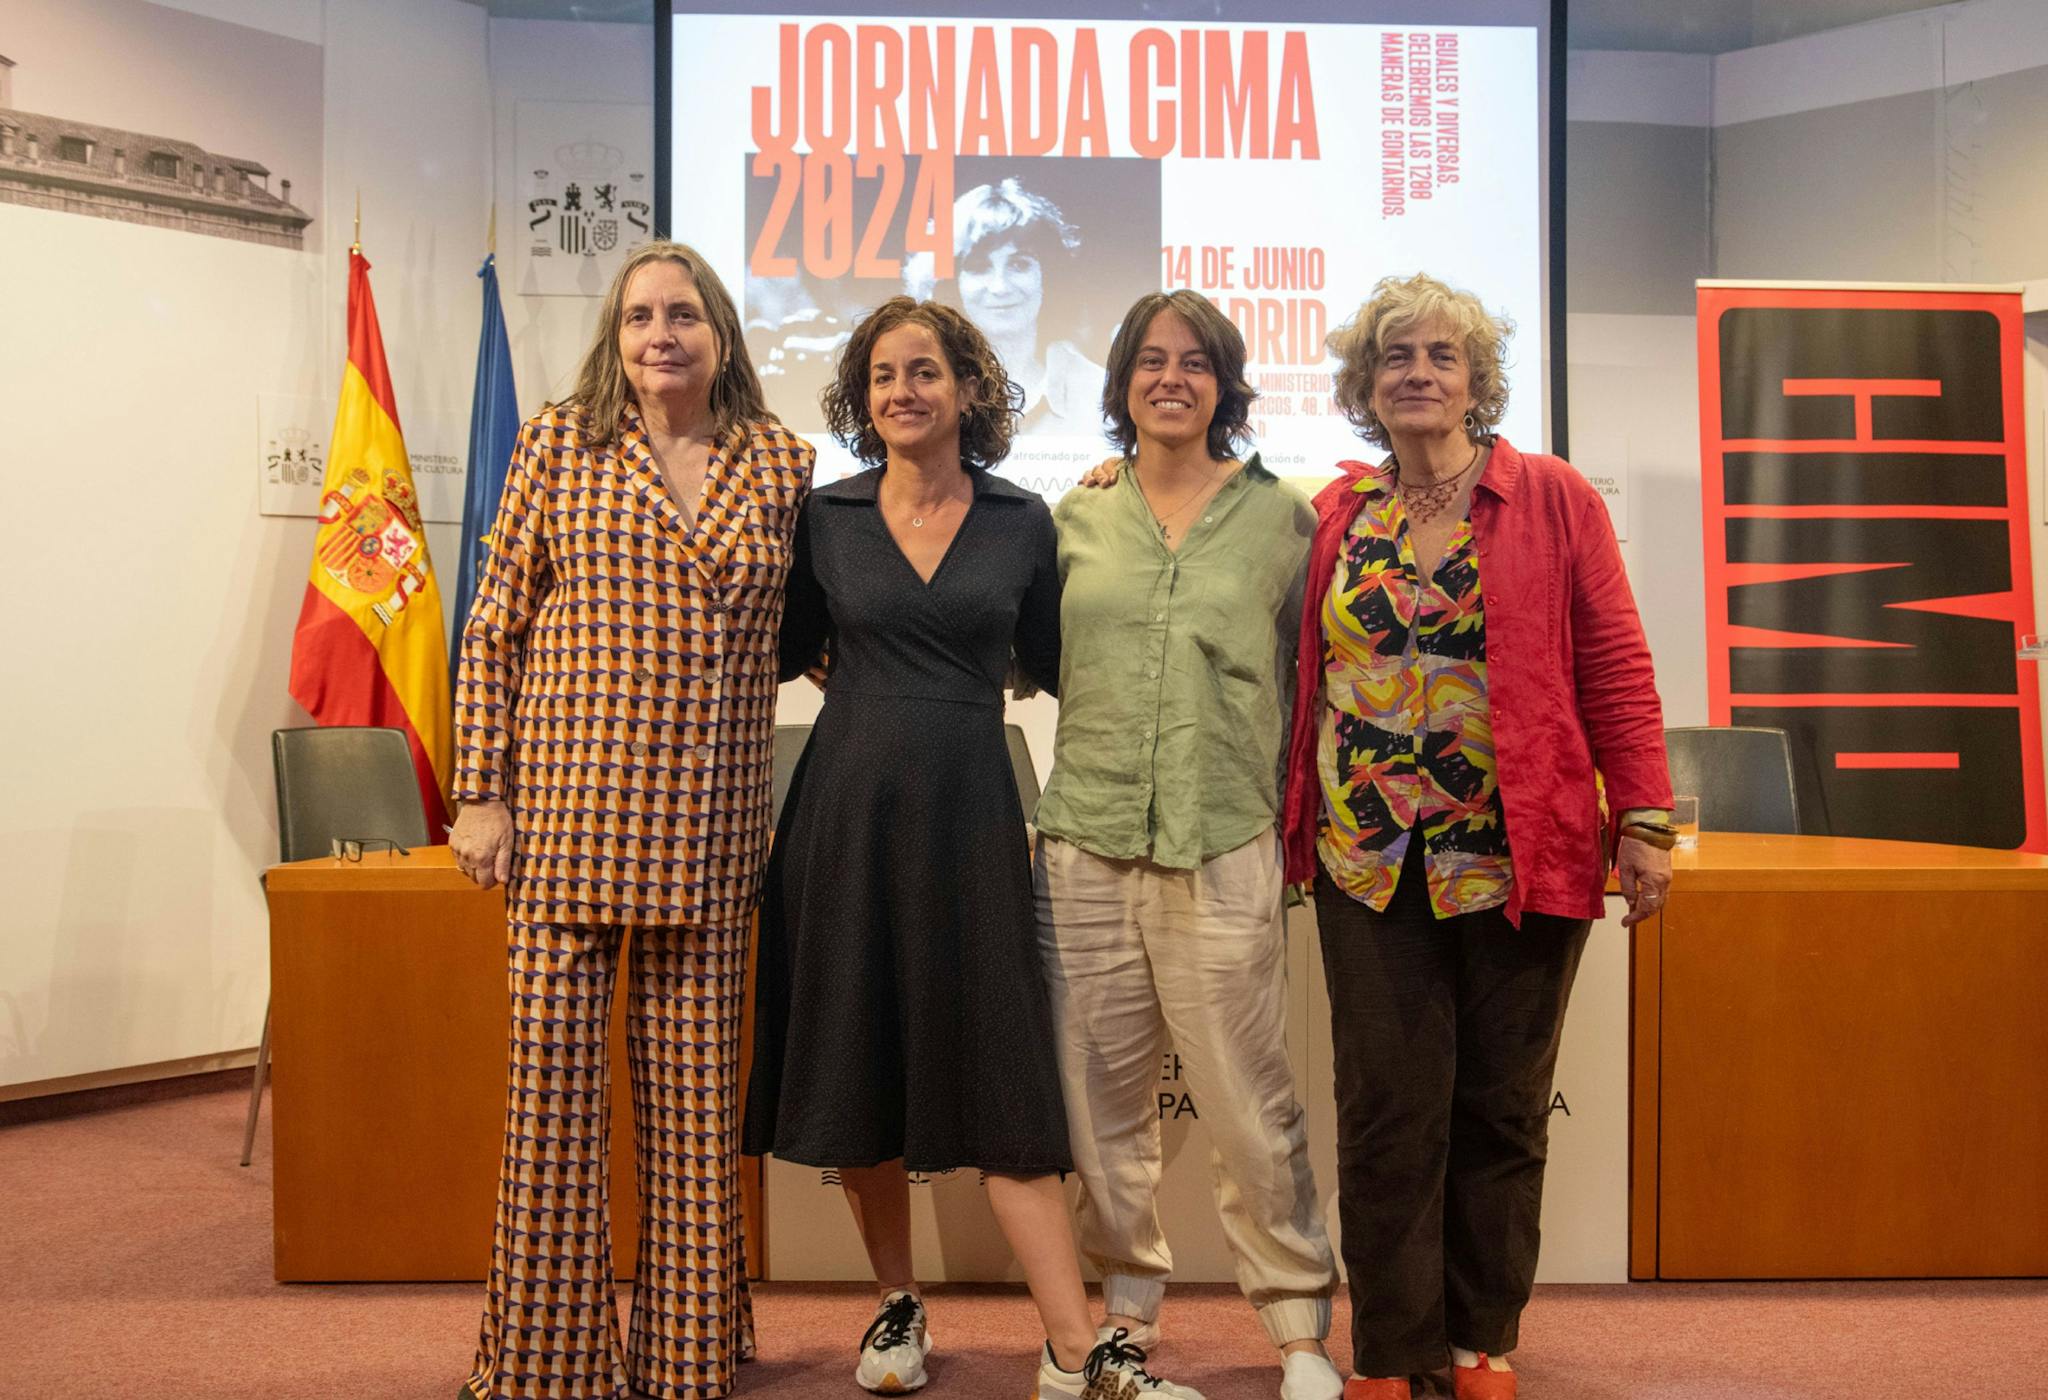 Fotografía de una de las mesas redondas de la Jornada CIMA 2024, con la expresidenta Cristina Andreu a la izquierda de la imagen